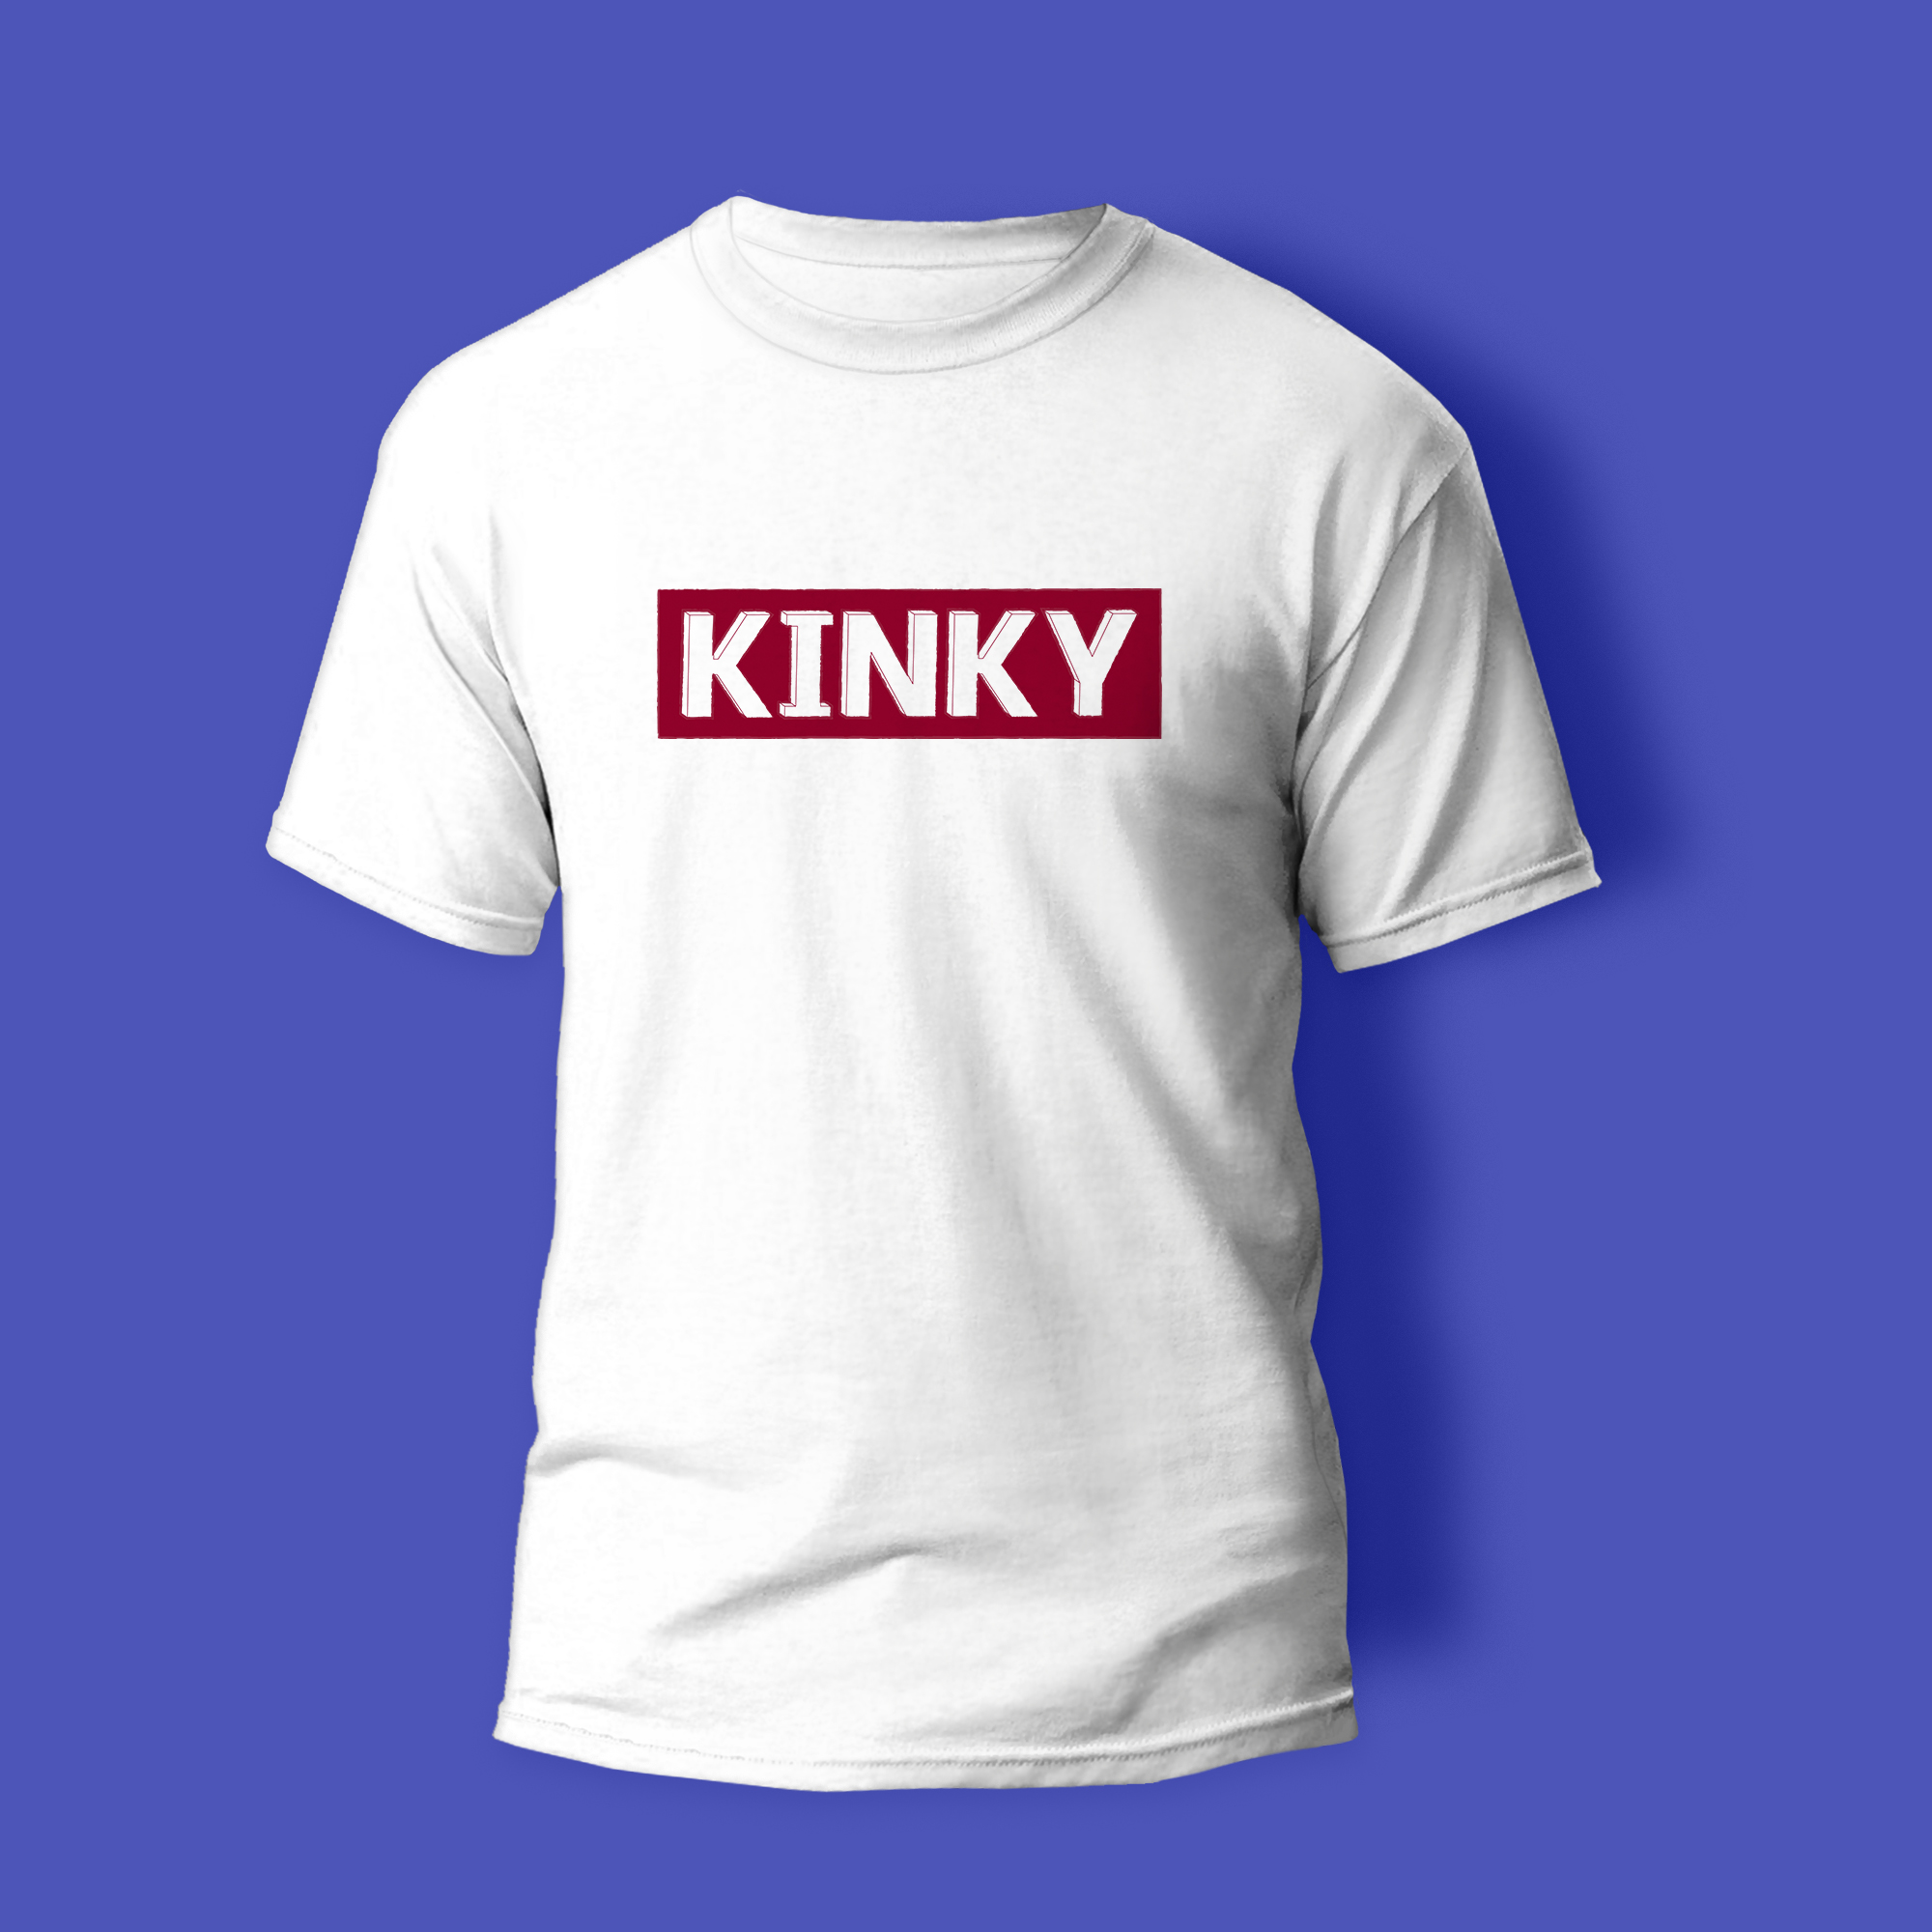 Kinky T-shirt